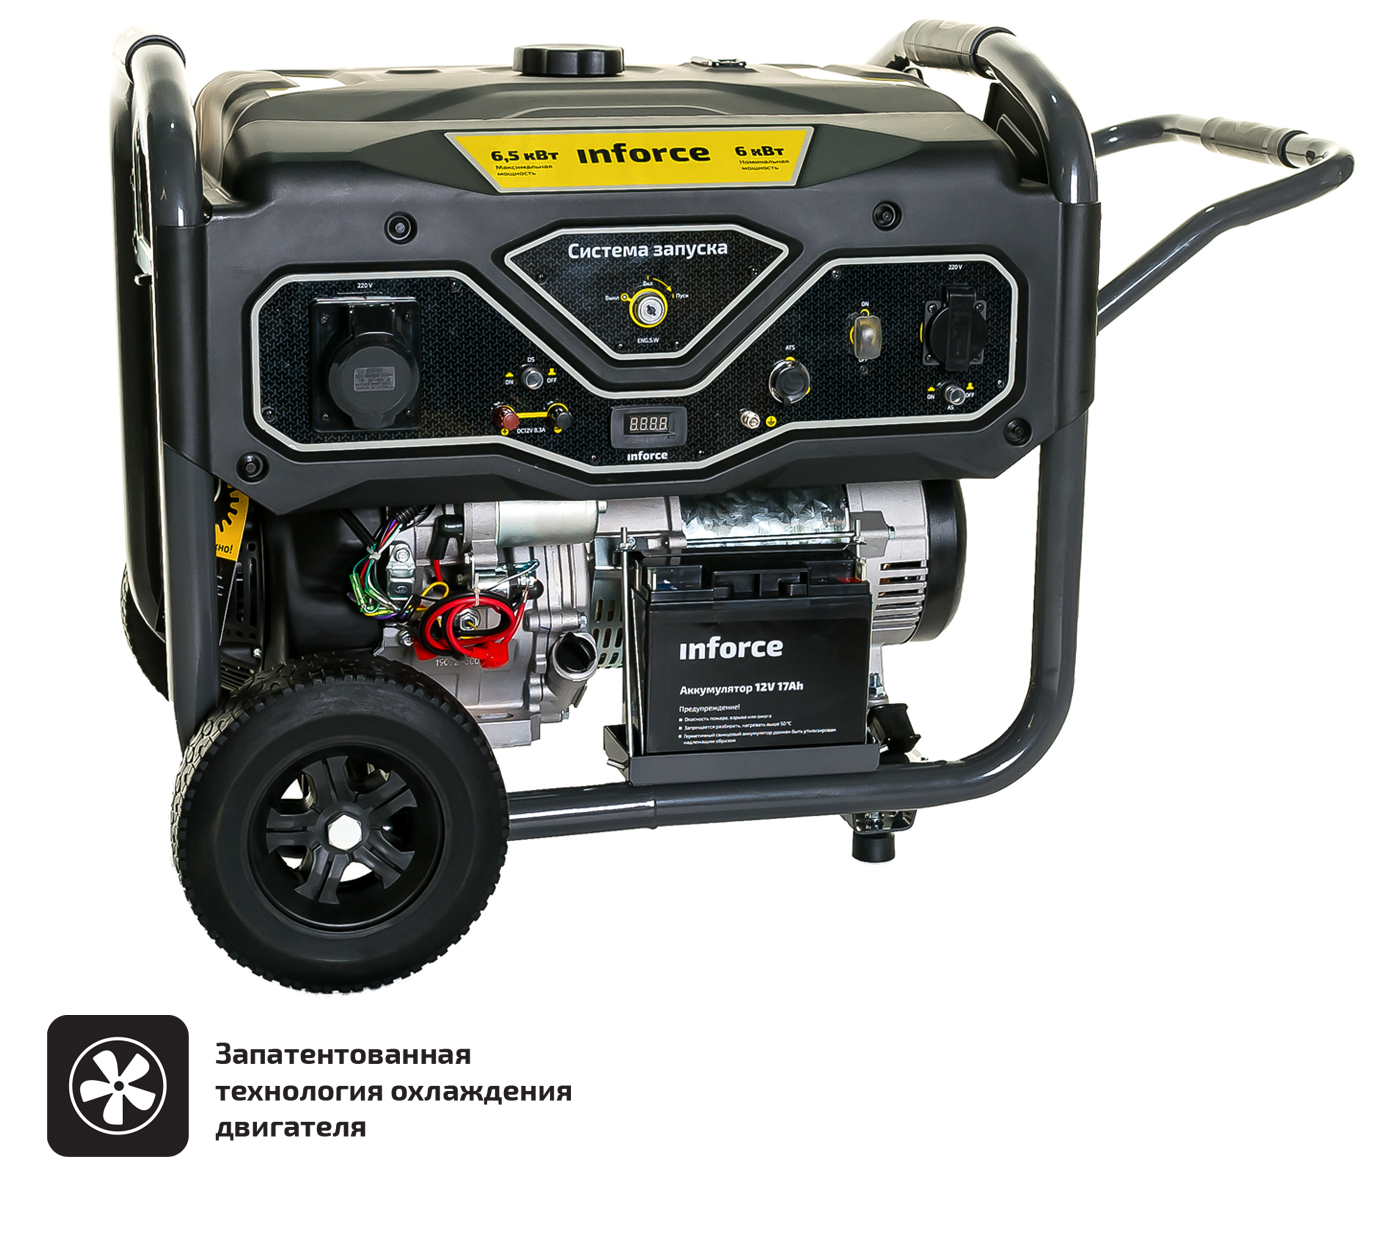 Бензиновый генератор с возможностью подключения блока автоматики Inforce GL 6500 04-03-15 аккумуляторная батарея nice ps224 для резервного питания автоматики и шлагбаумов signo4 s